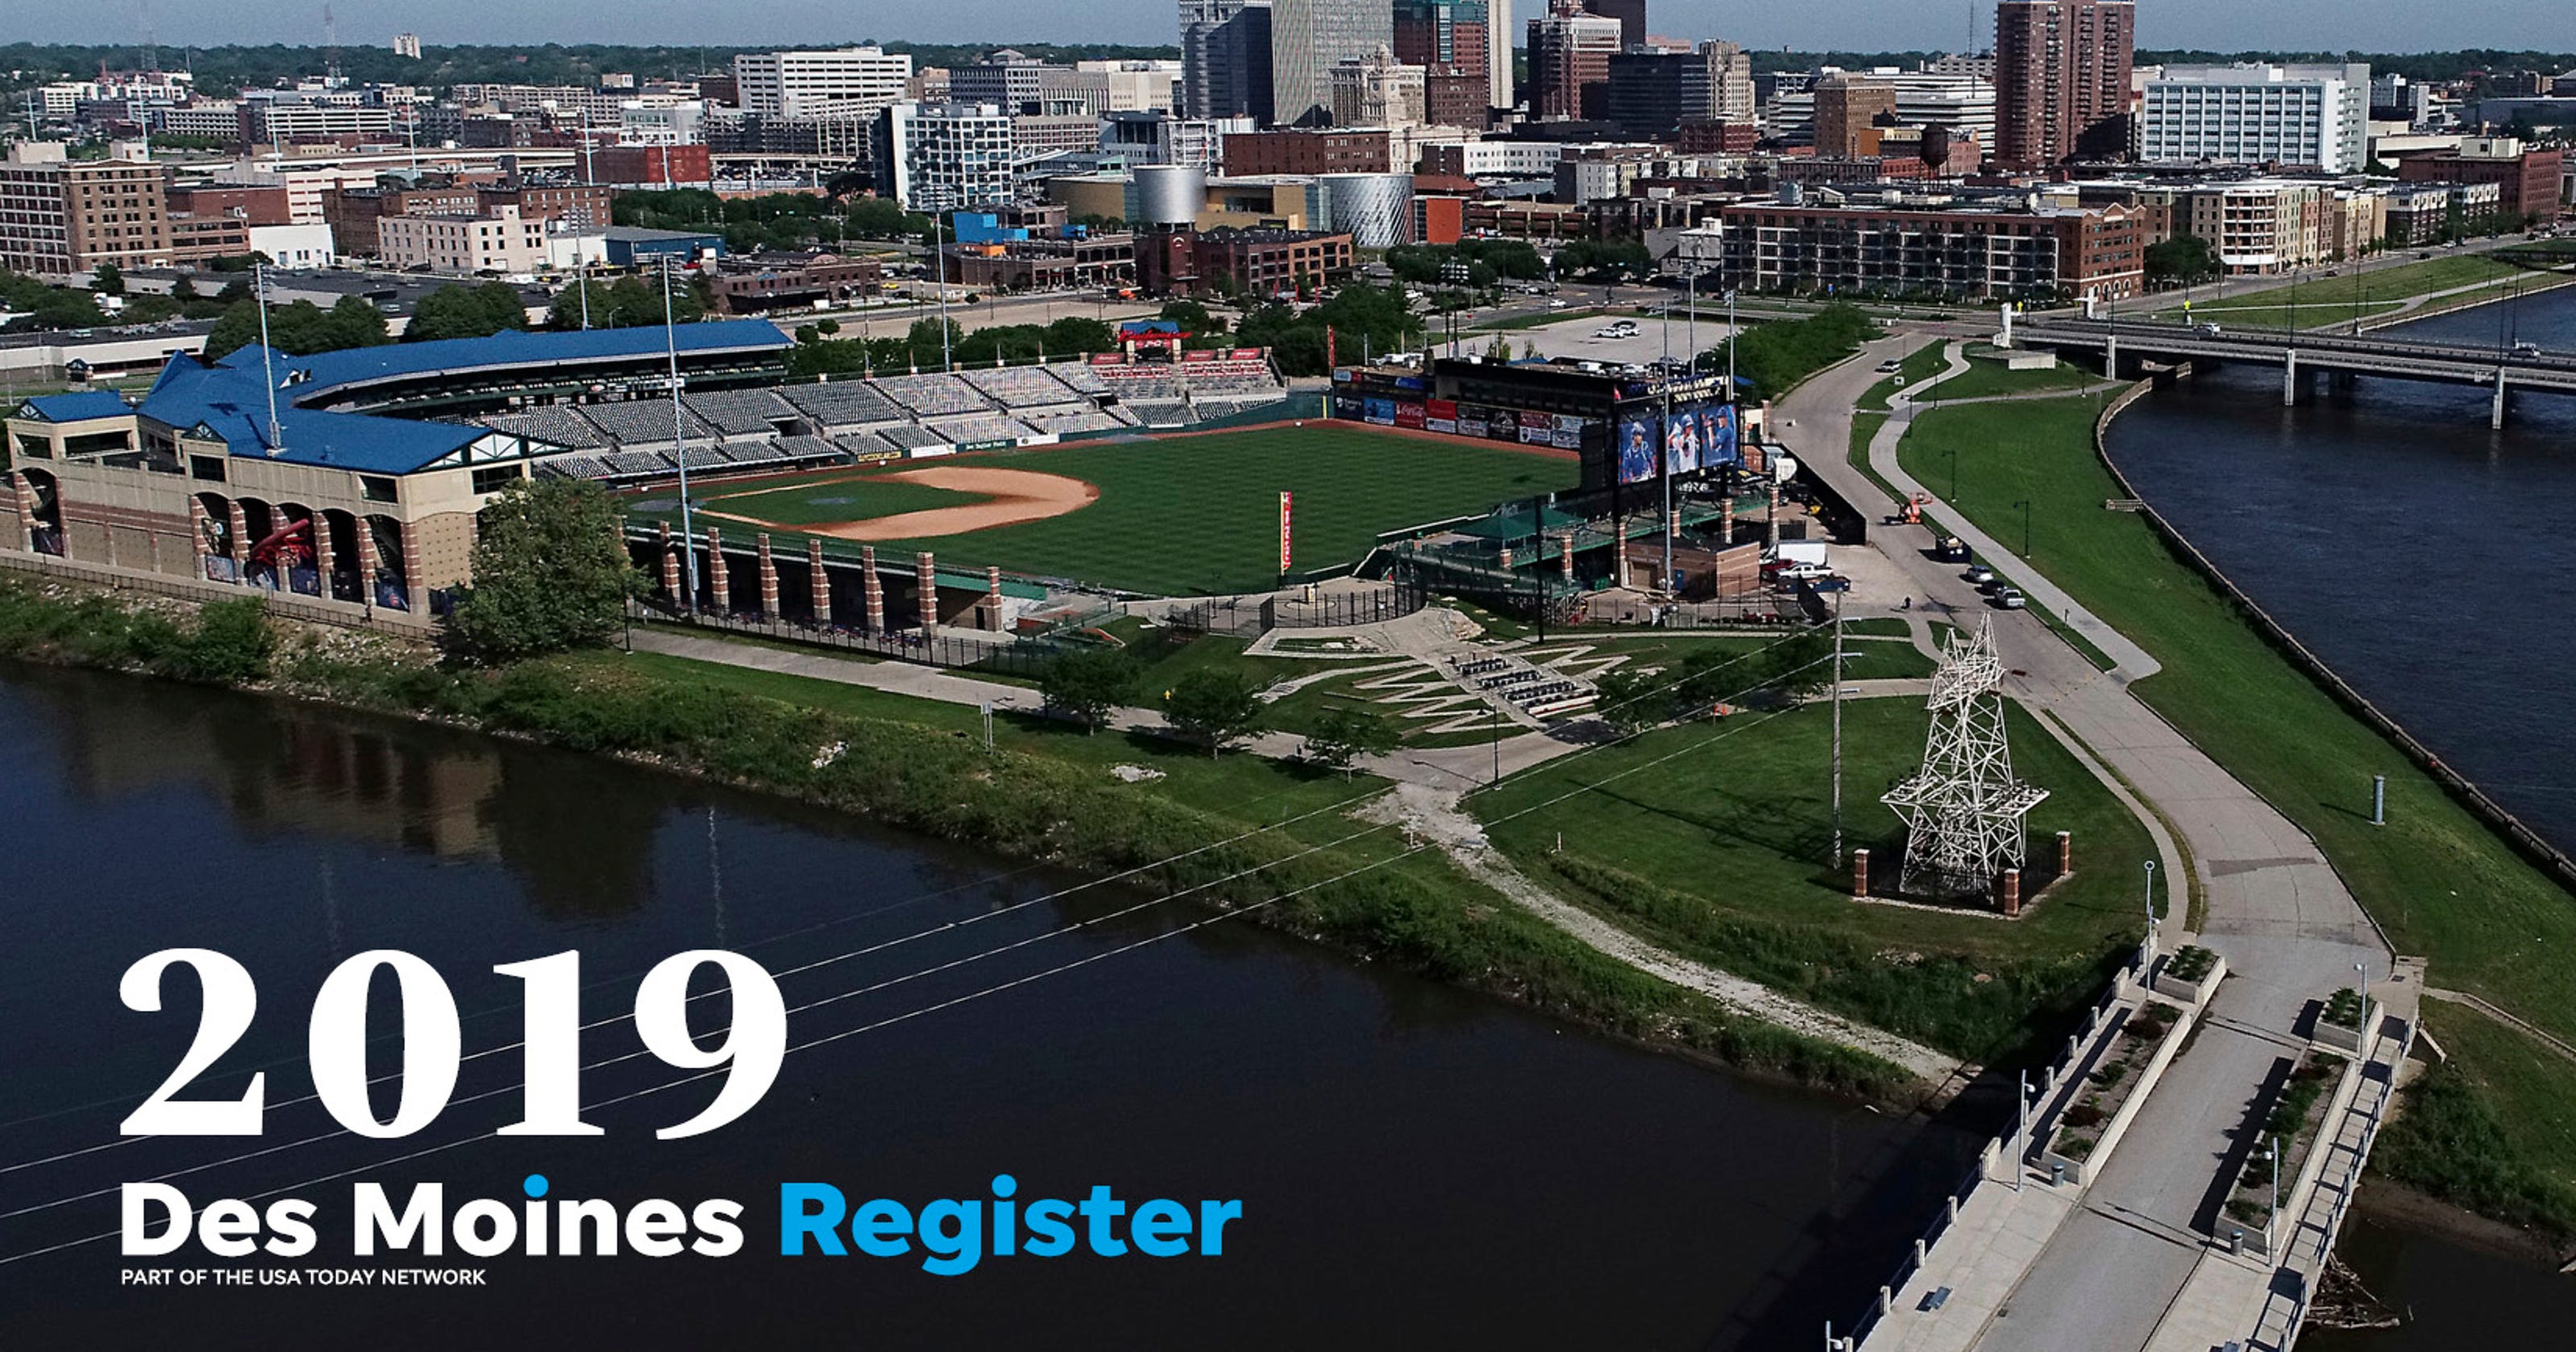 2019 Des Moines Register photo calendar featured images